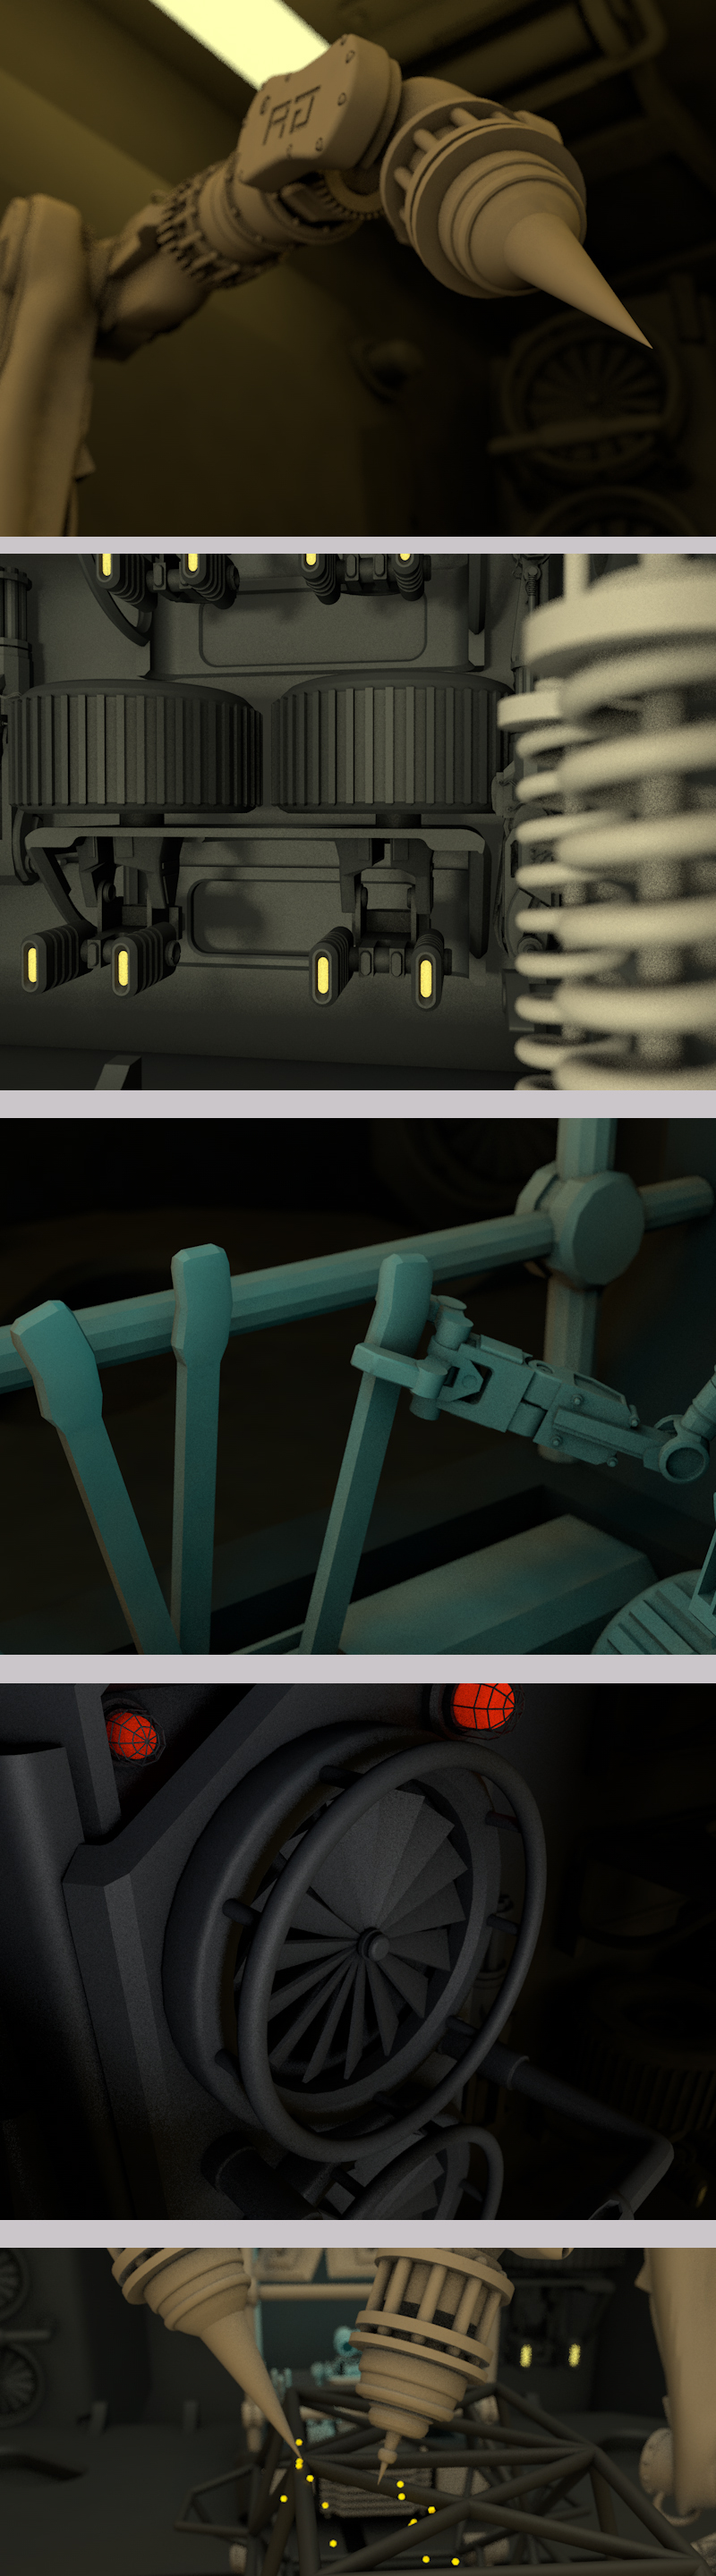 机器人机械臂工厂制作钢管车动画模型